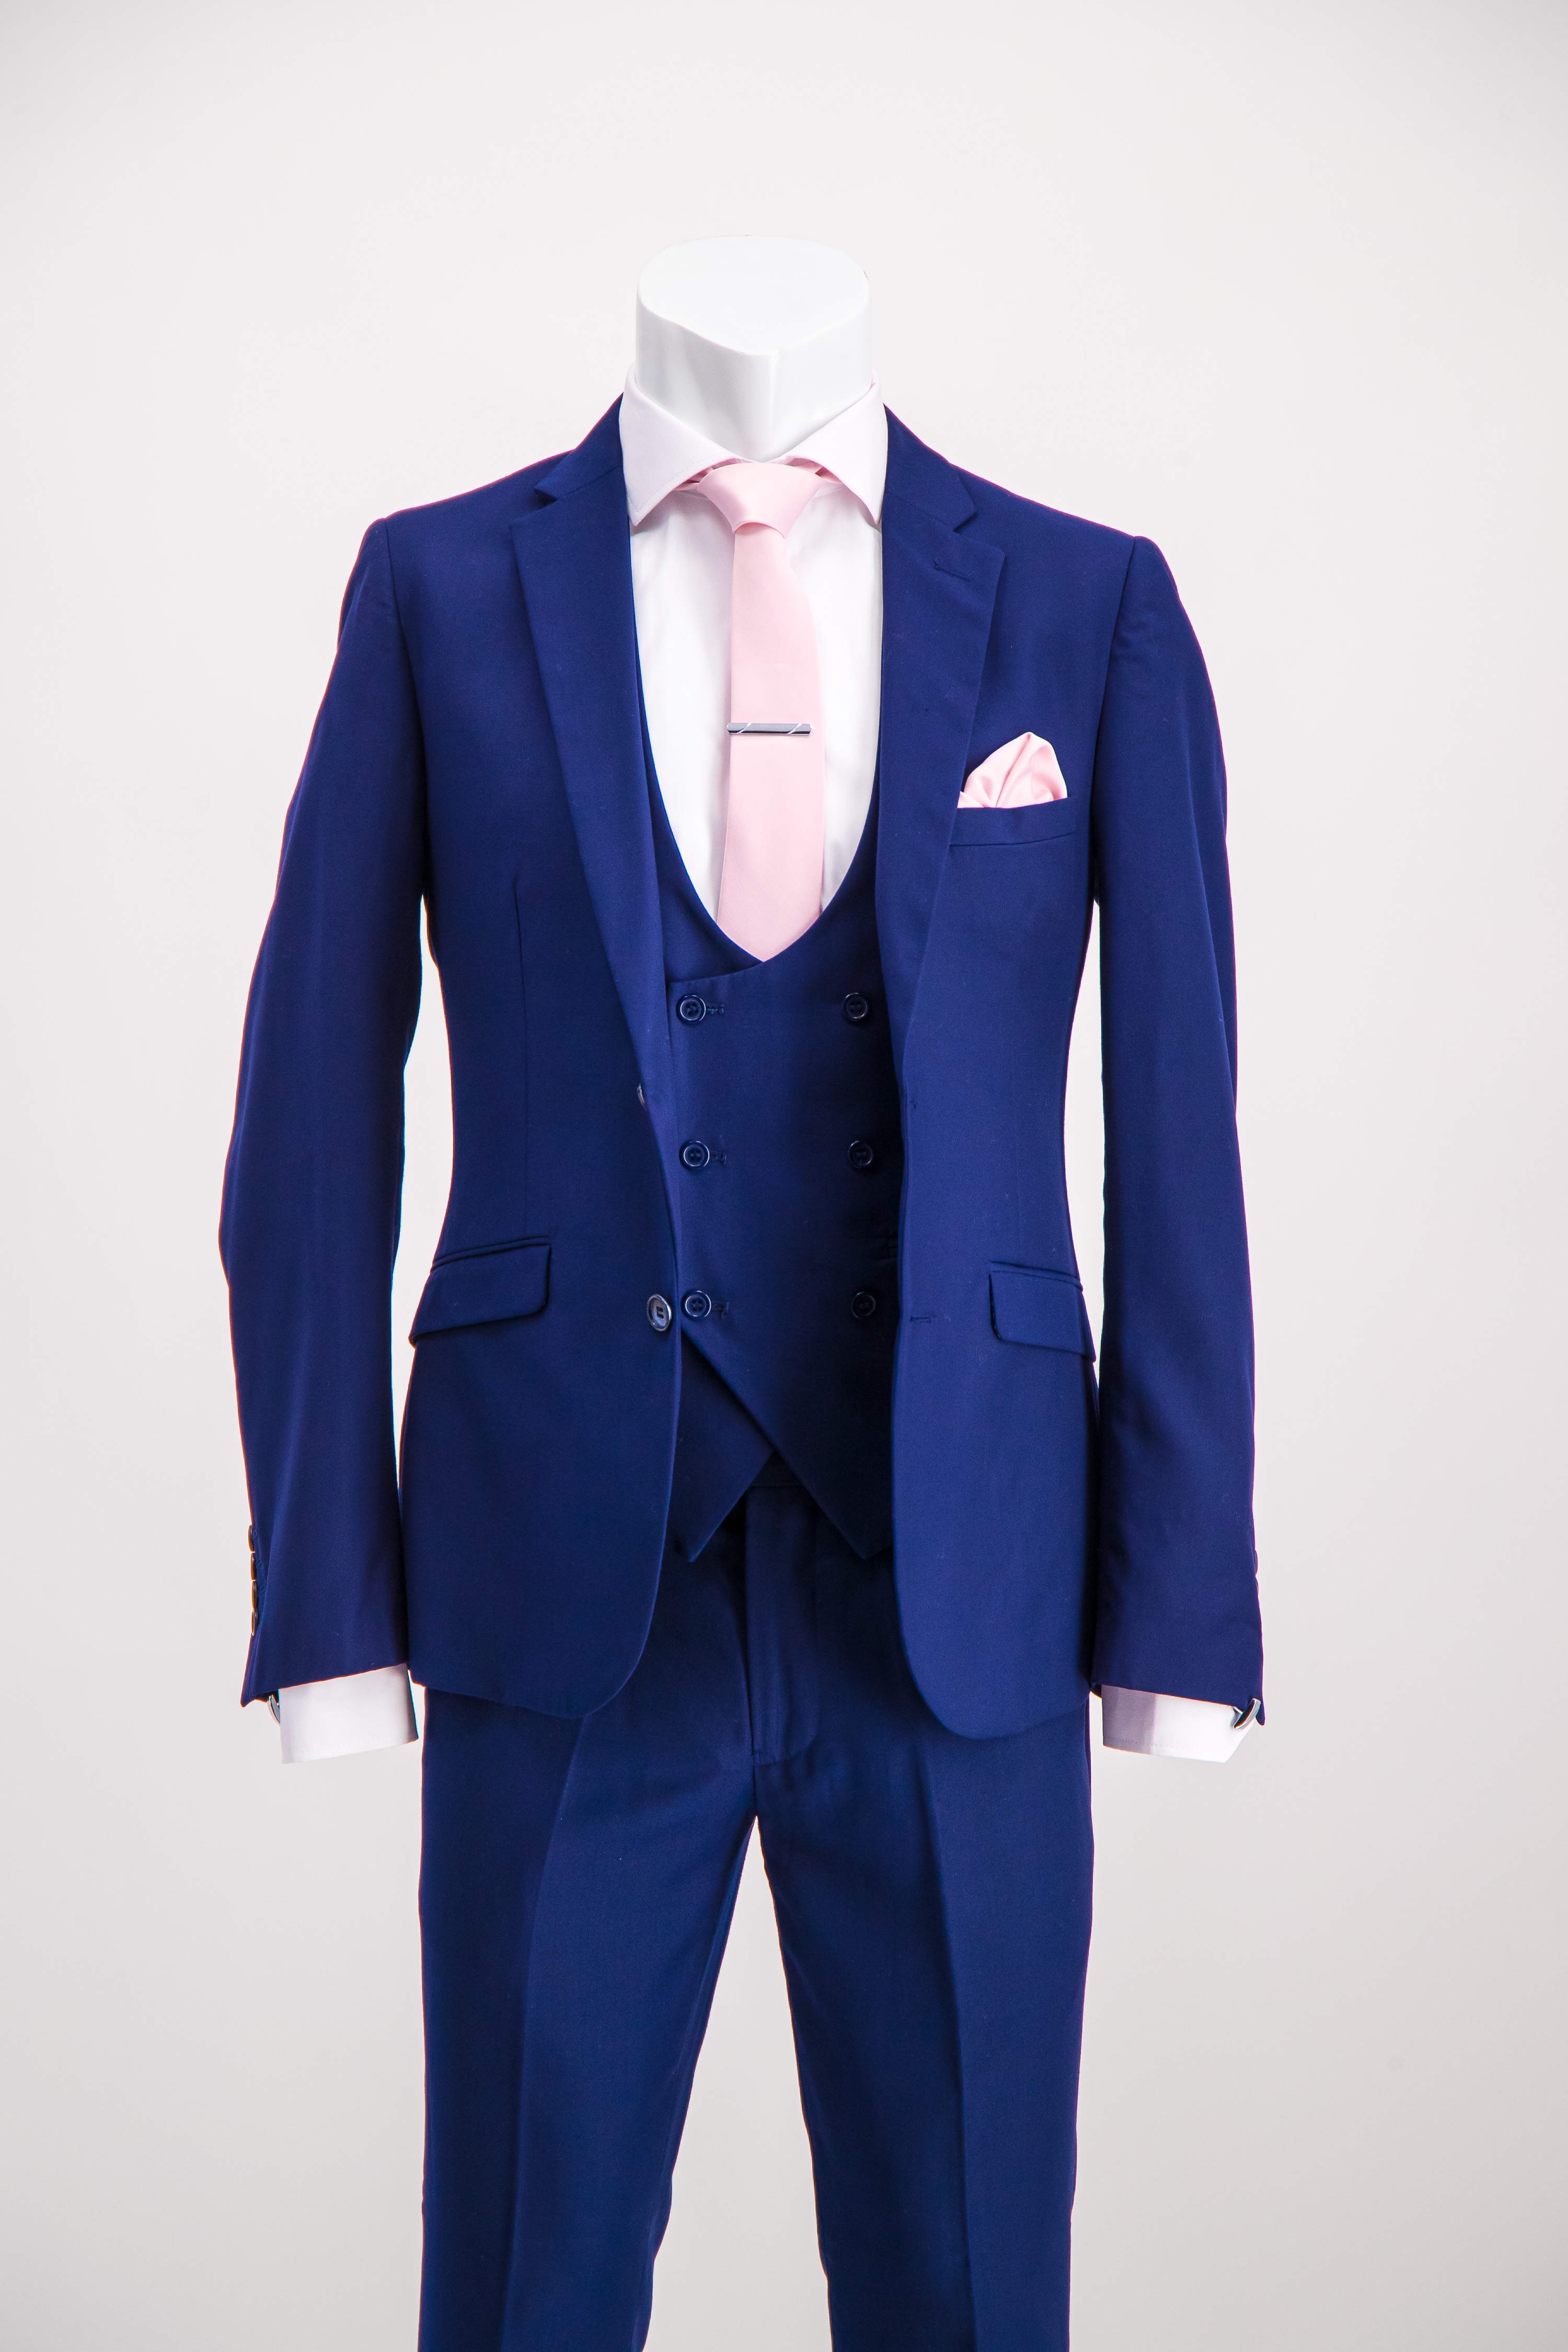 Navy Blue Suit